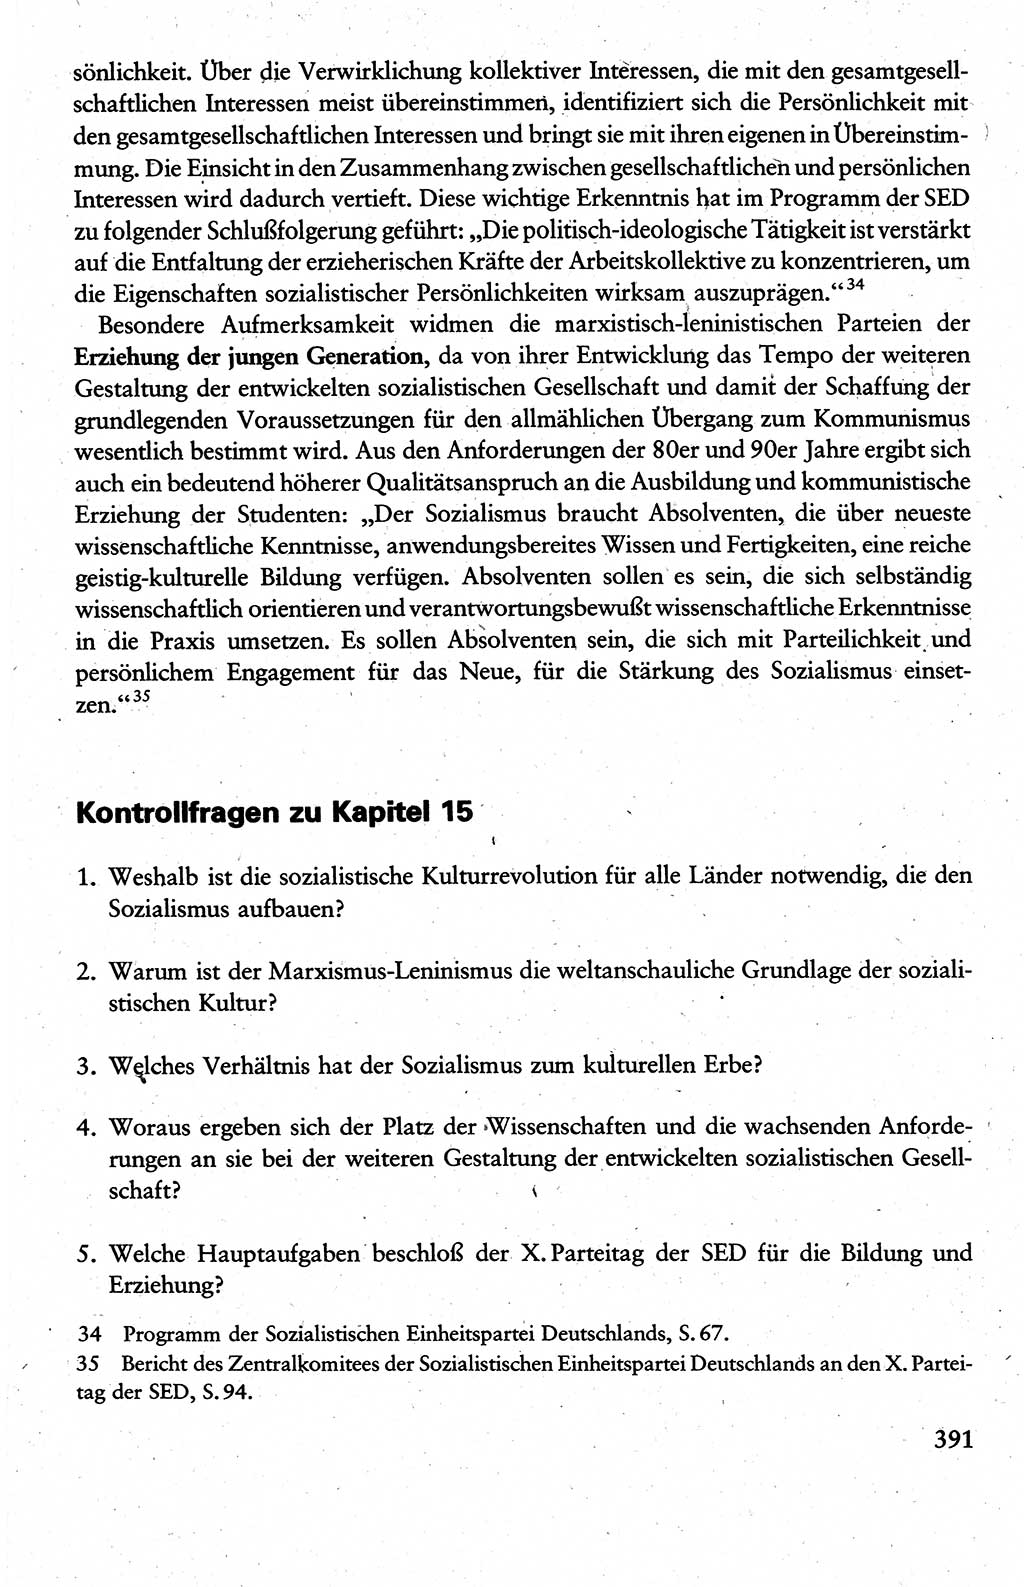 Wissenschaftlicher Kommunismus [Deutsche Demokratische Republik (DDR)], Lehrbuch für das marxistisch-leninistische Grundlagenstudium 1983, Seite 391 (Wiss. Komm. DDR Lb. 1983, S. 391)